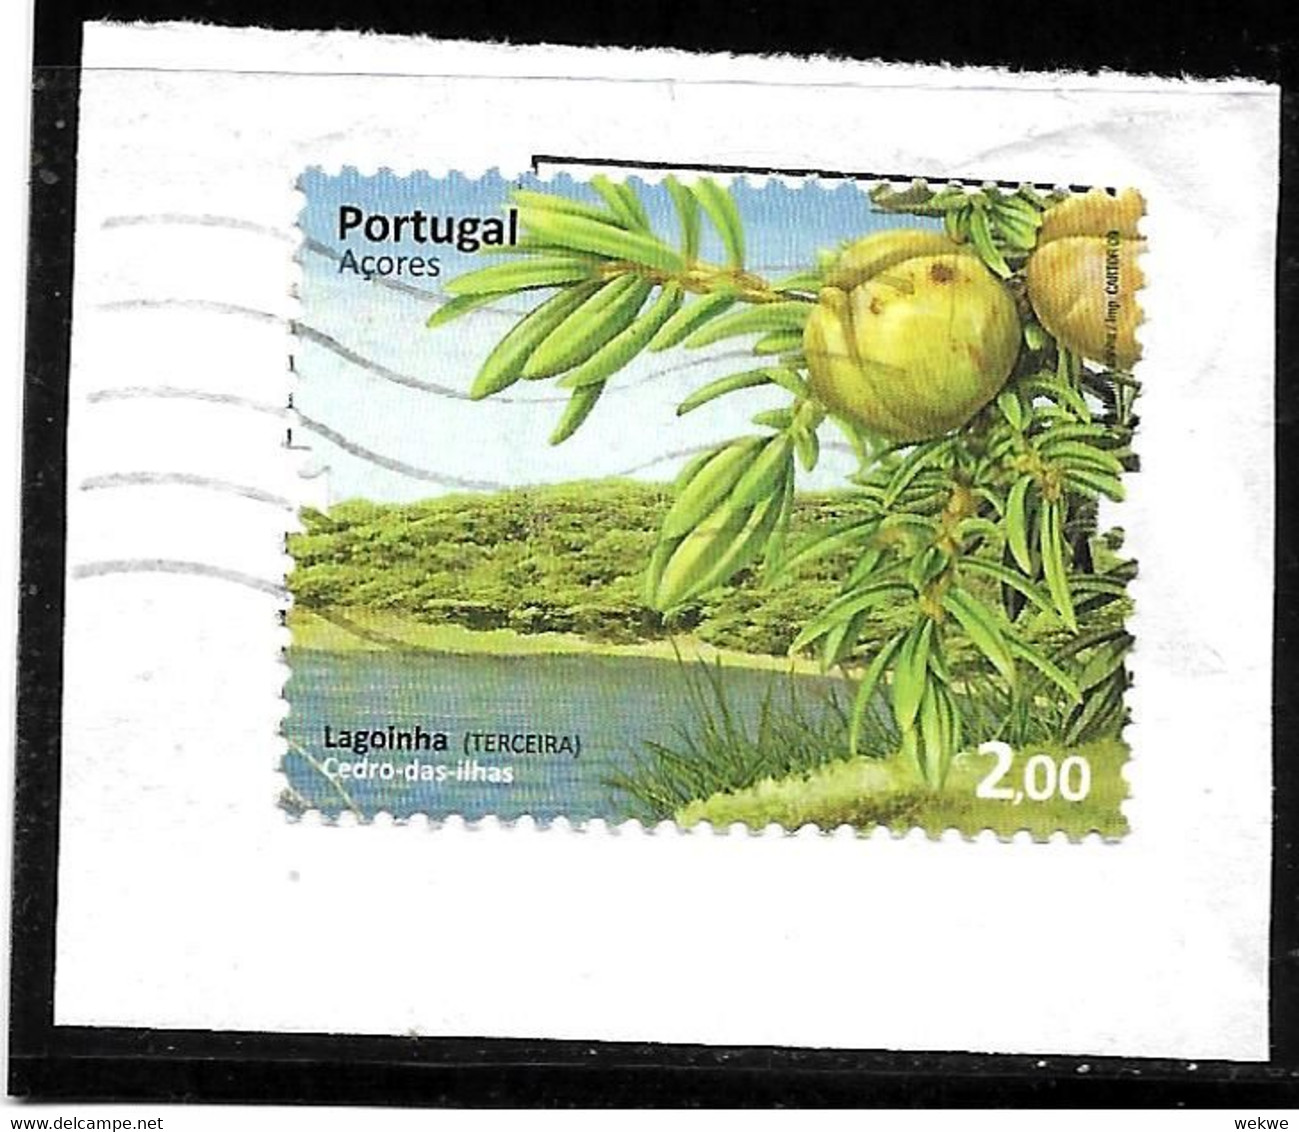 PORTUGAL006 / (Azores)  Fragment, Thema  Insel, Zeder 2009  O - Usati